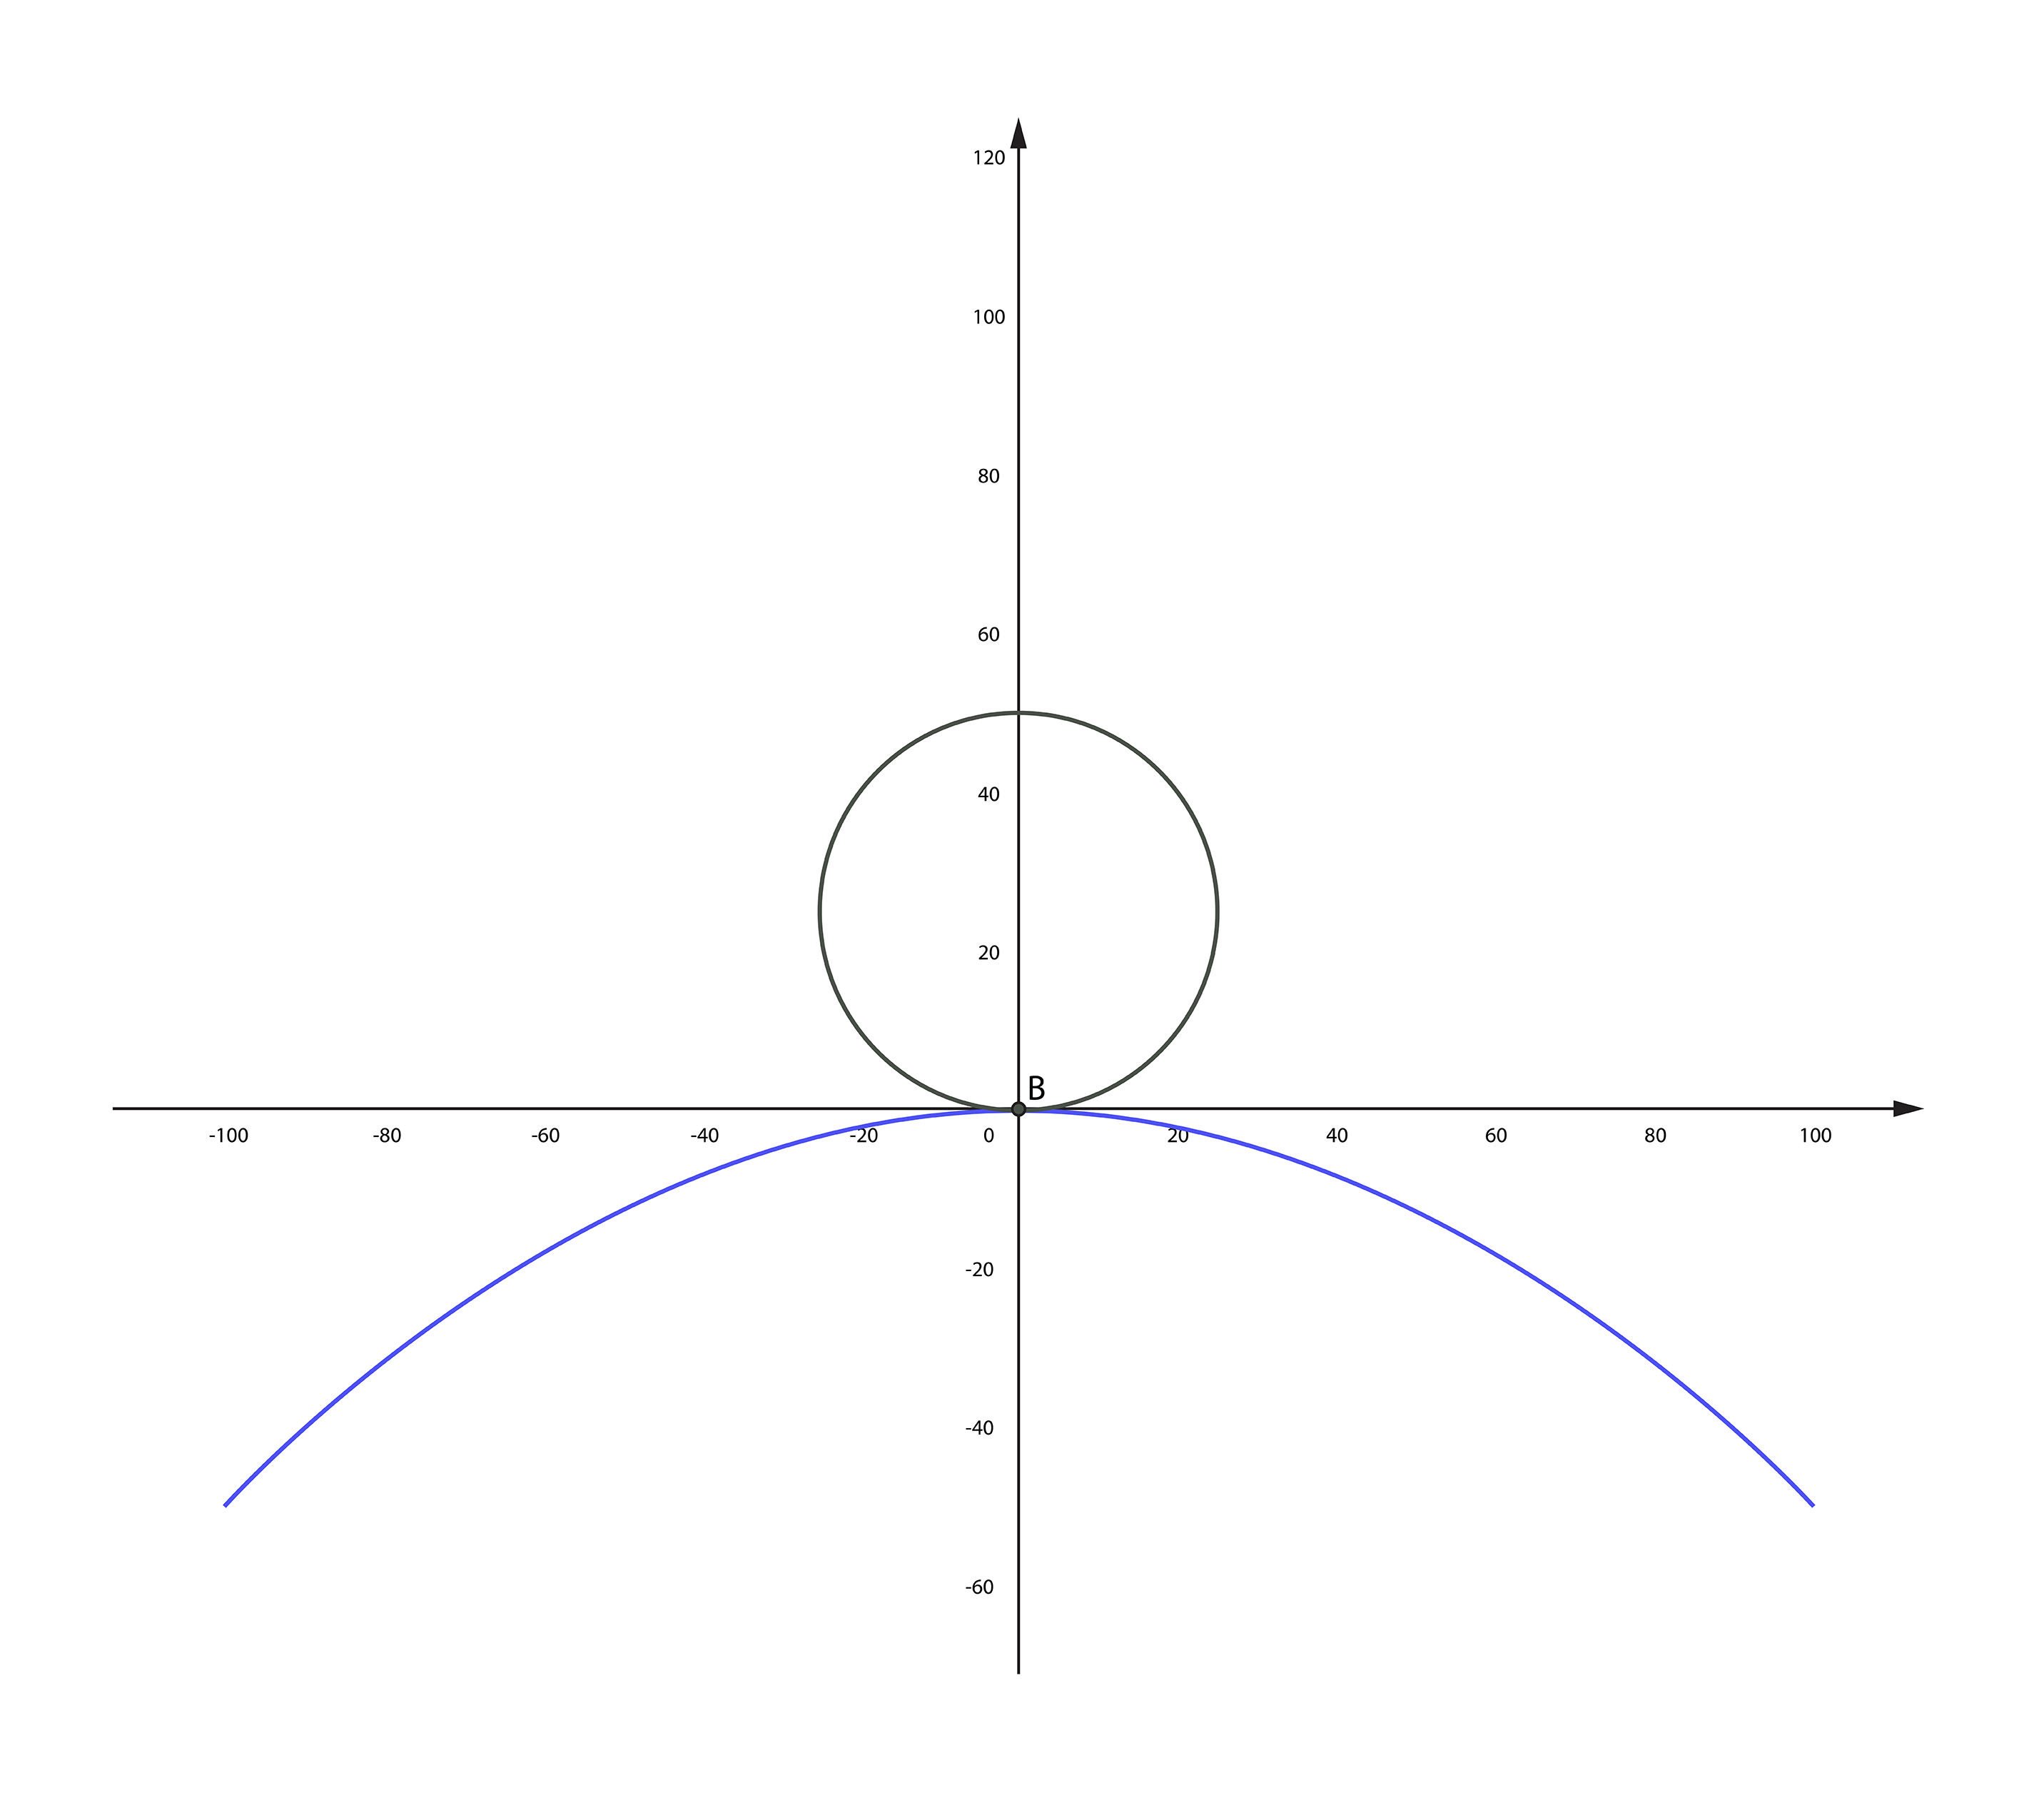 Konvexe Flächen (b) erfordern beim Schleifen und Polieren einen größeren horizontalen Bewegungsbereich als konkave (a) - Bild 2b.